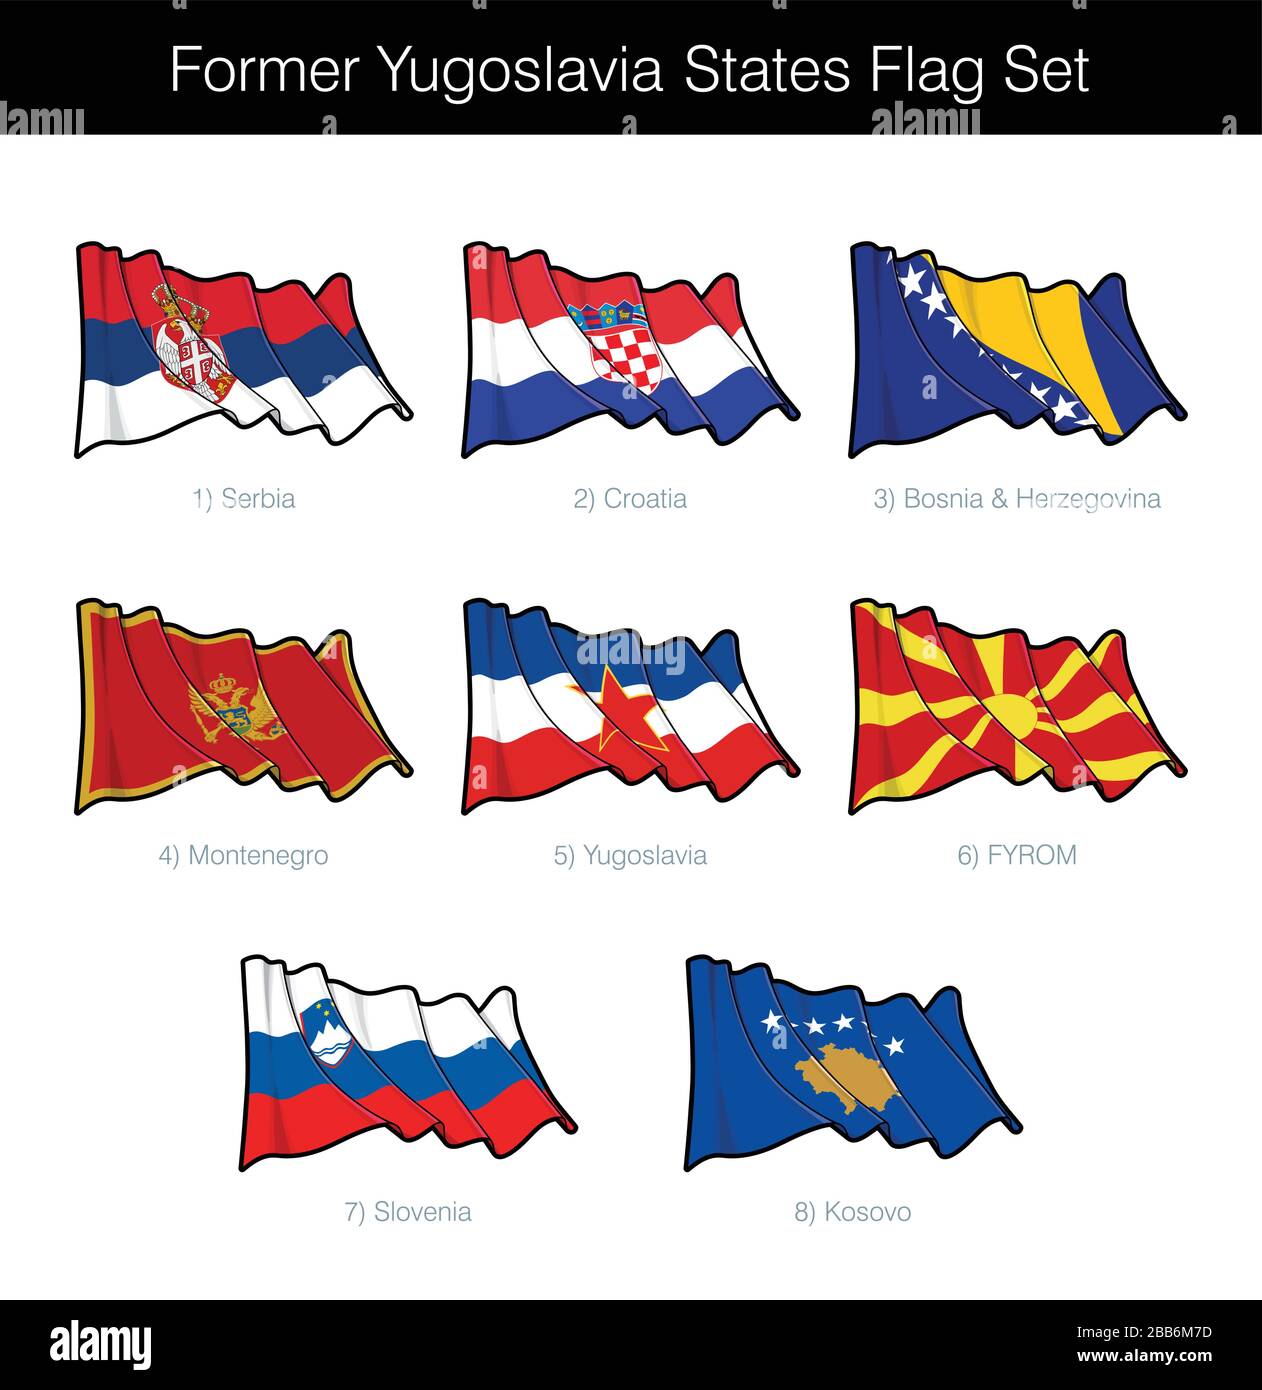 Les États de l'ex-Yougoslavie agitant l'ensemble des drapeaux. L'ensemble comprend les drapeaux de la Croatie, de la Serbie, de la Slovénie, de l'ARYM, du Monténégro, de la Bosnie-Herzégovine et du Kosovo. V Illustration de Vecteur